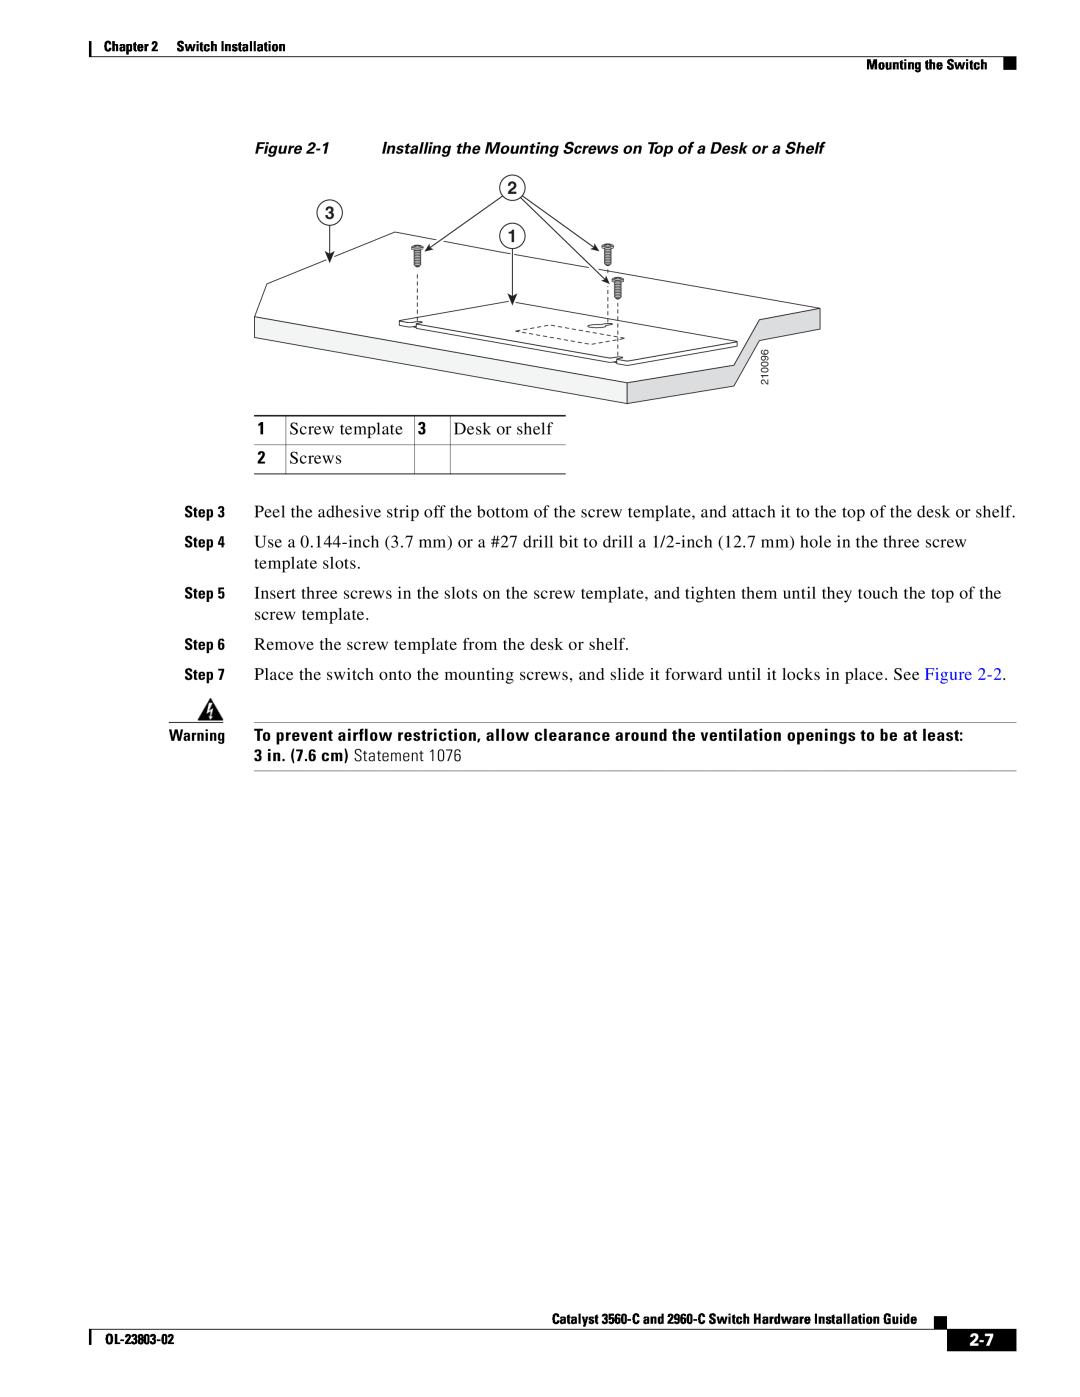 Cisco Systems 3560-C manual Screw template 3 Desk or shelf Screws 